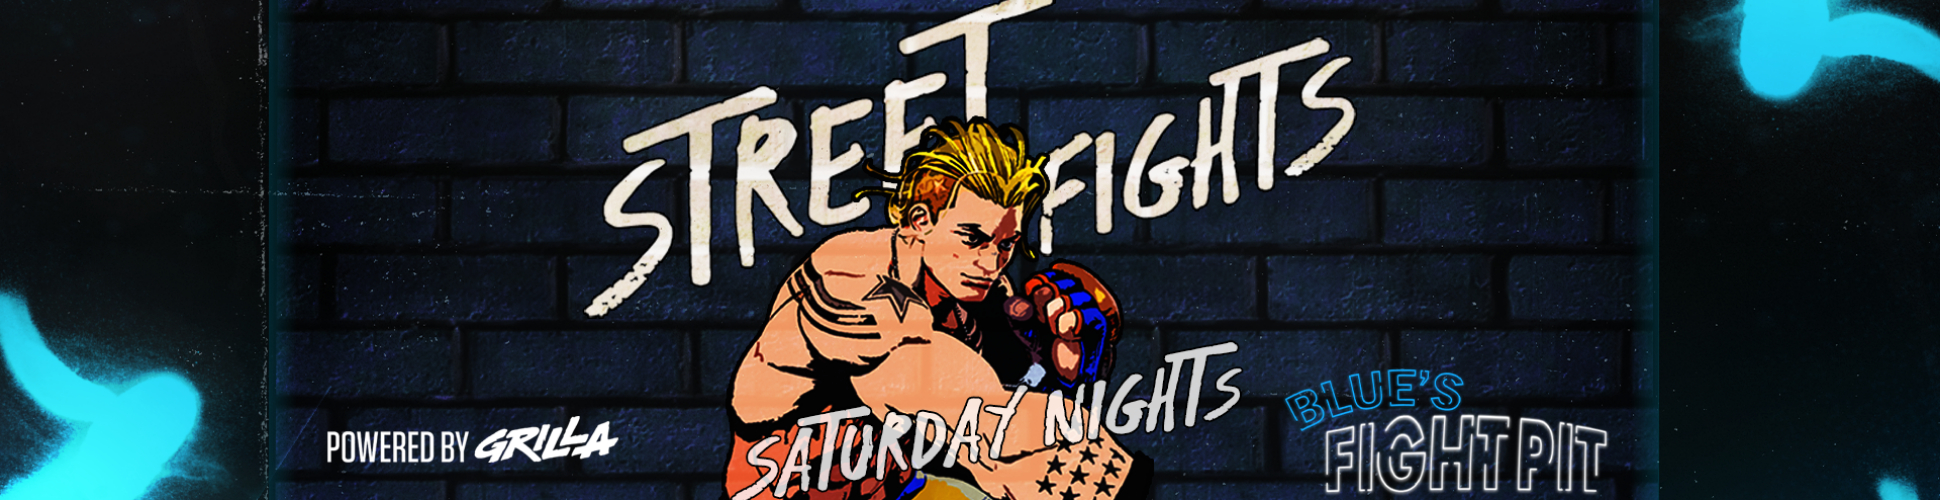 Blue's Fight Pit - Street Fights R4 Saturday Nights #17